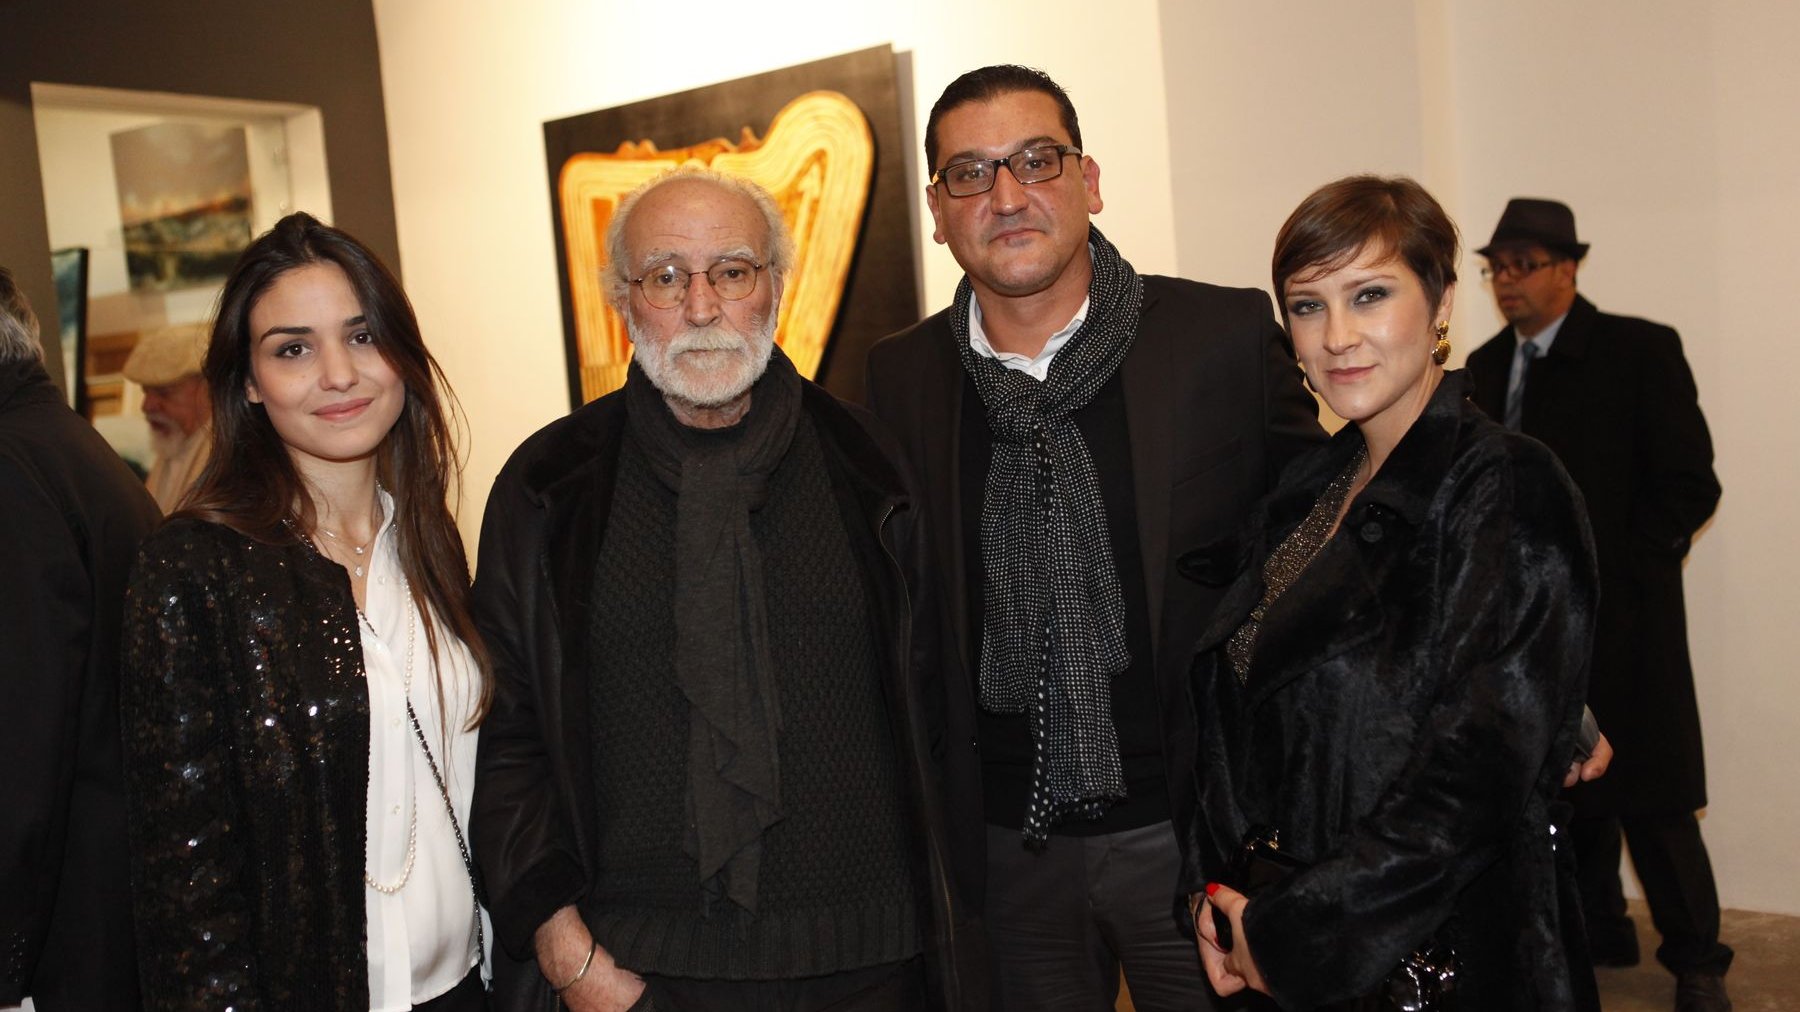 Des artistes et des passionnés d'art se retrouvent autour de l'œuvre colorée de l'artiste peintre Moa Bennani.
